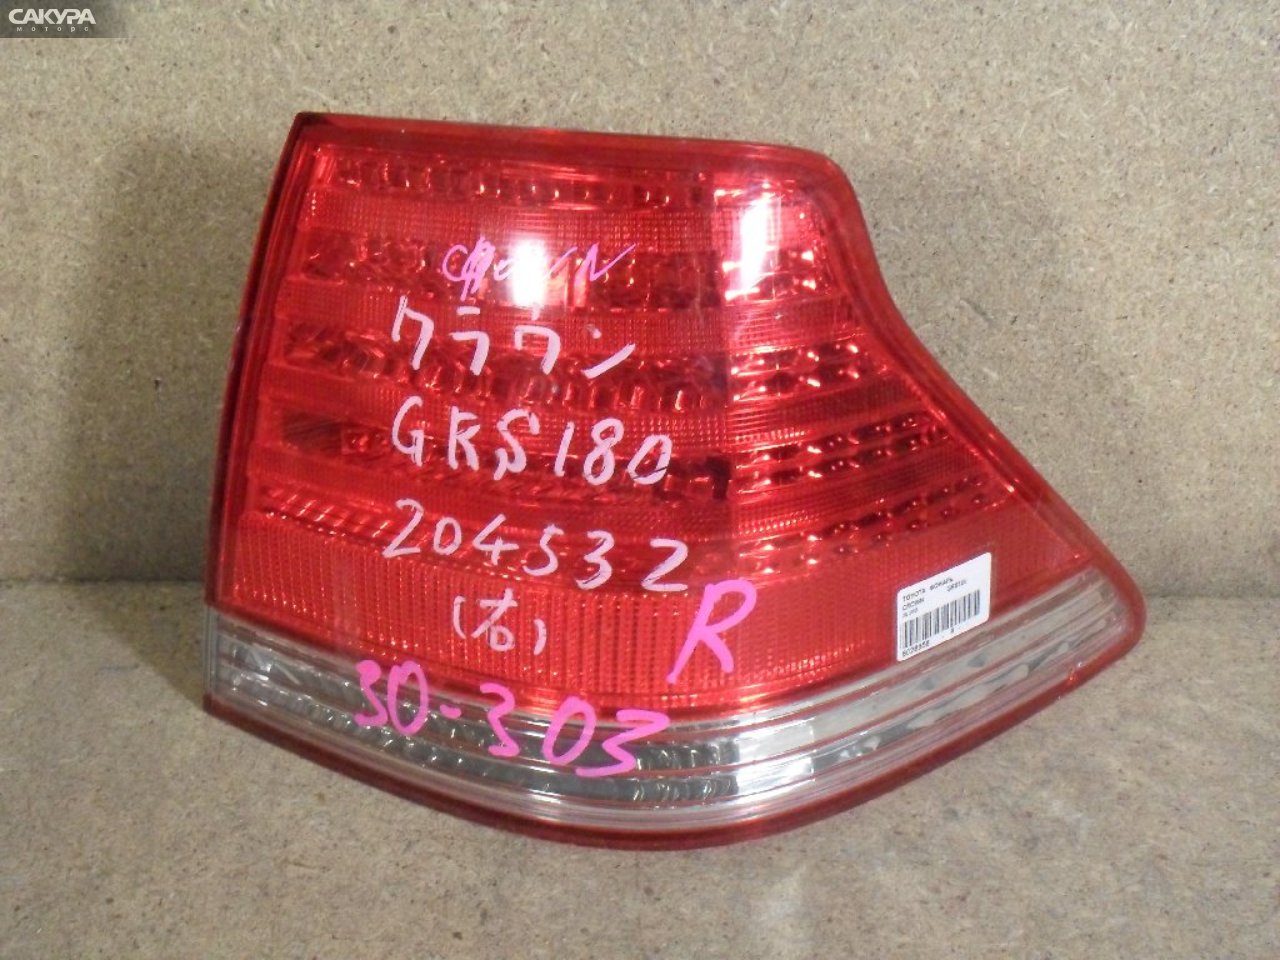 Фонарь стоп-сигнала правый Toyota Crown GRS180 30-303: купить в Сакура Абакан.